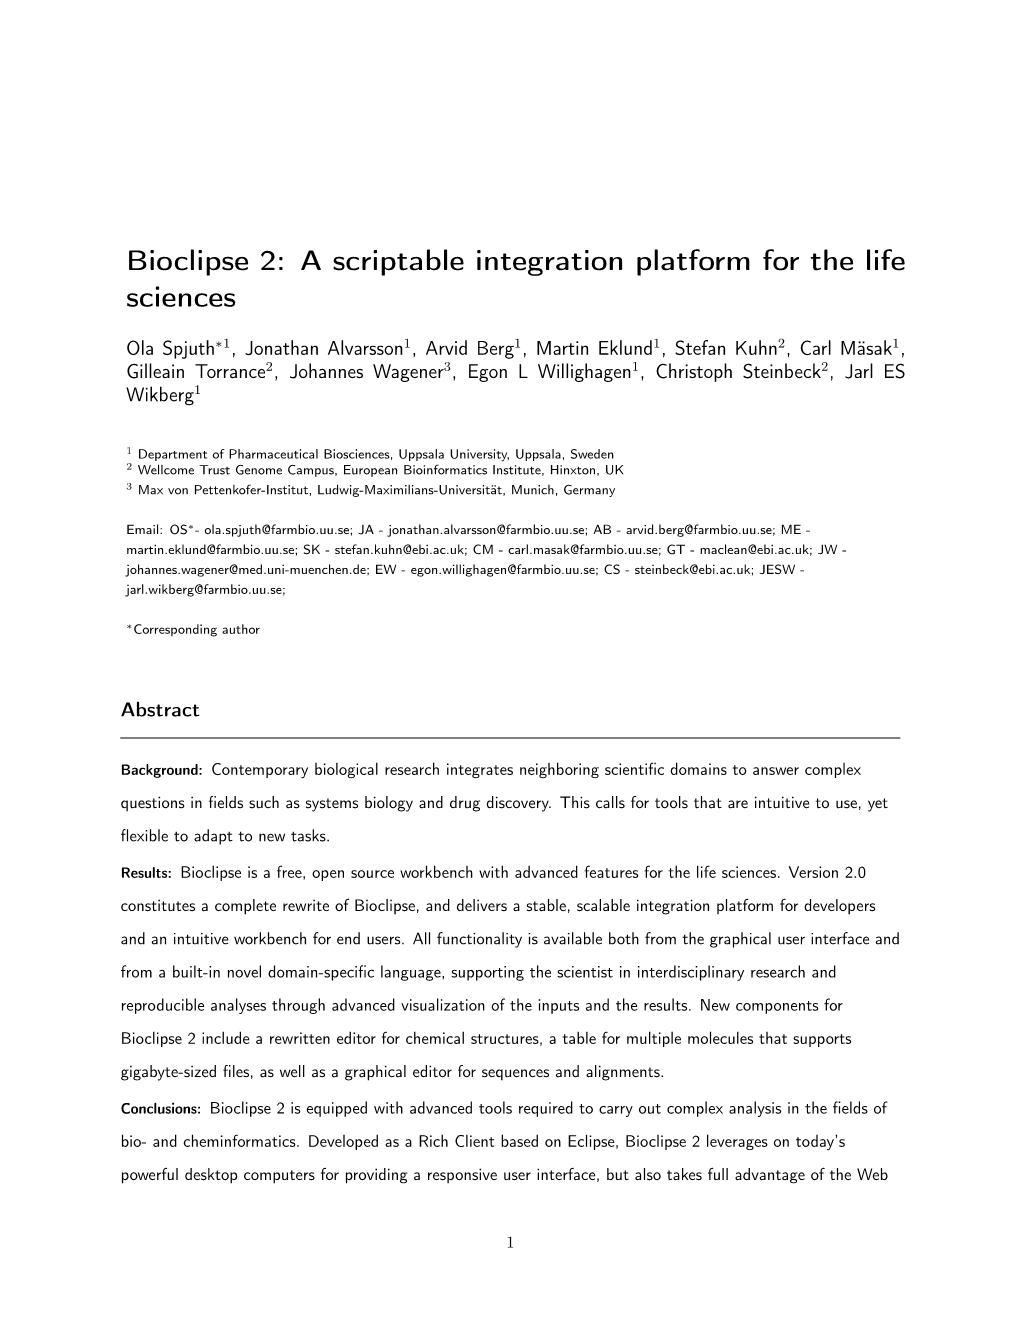 Bioclipse 2: a Scriptable Integration Platform for the Life Sciences